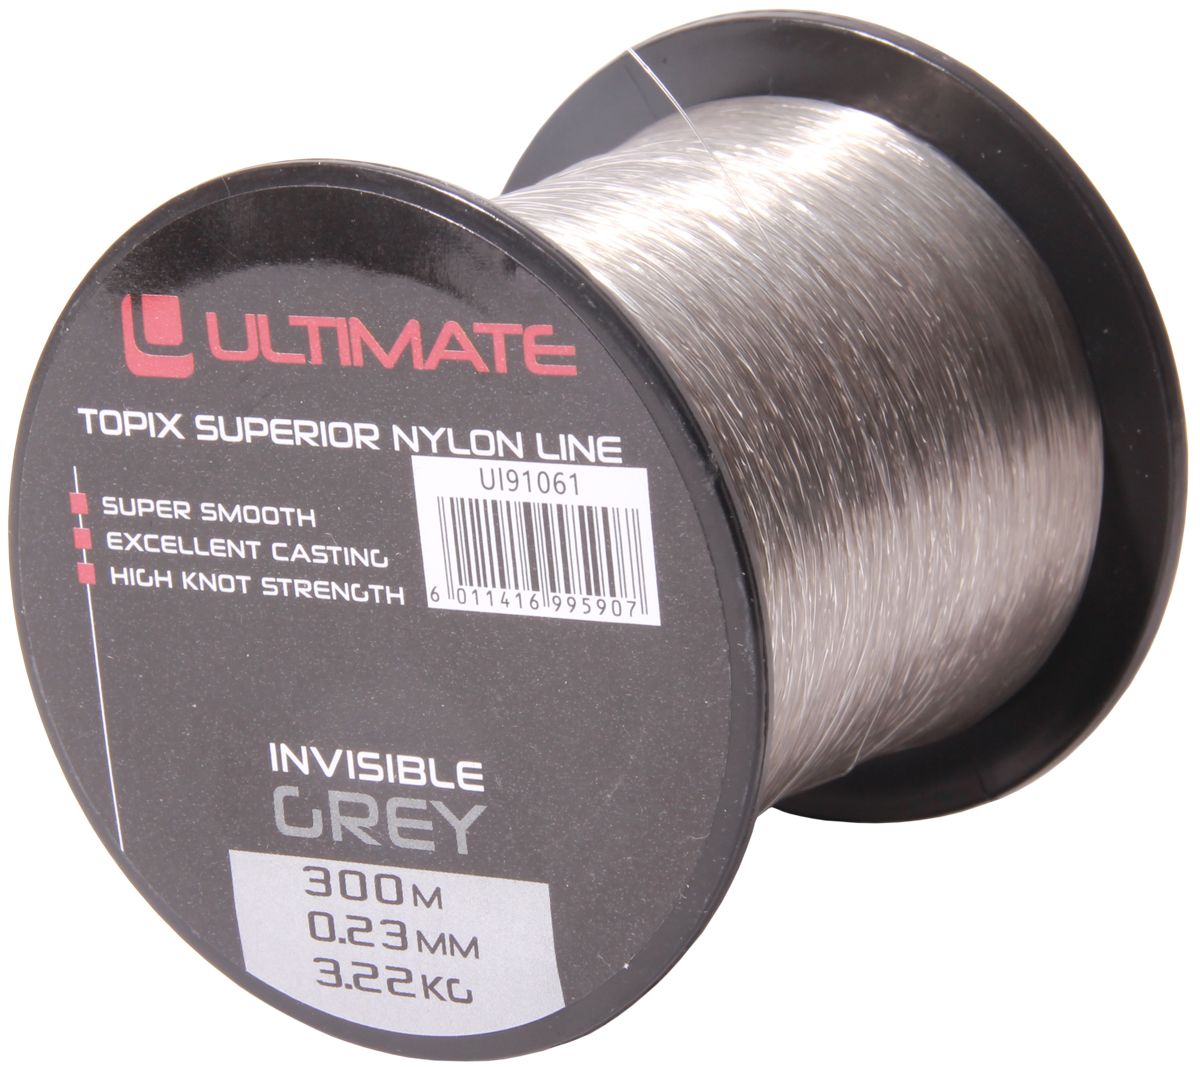 Ultimate Topix Nylon Invisible Grey 0,23mm (300m)